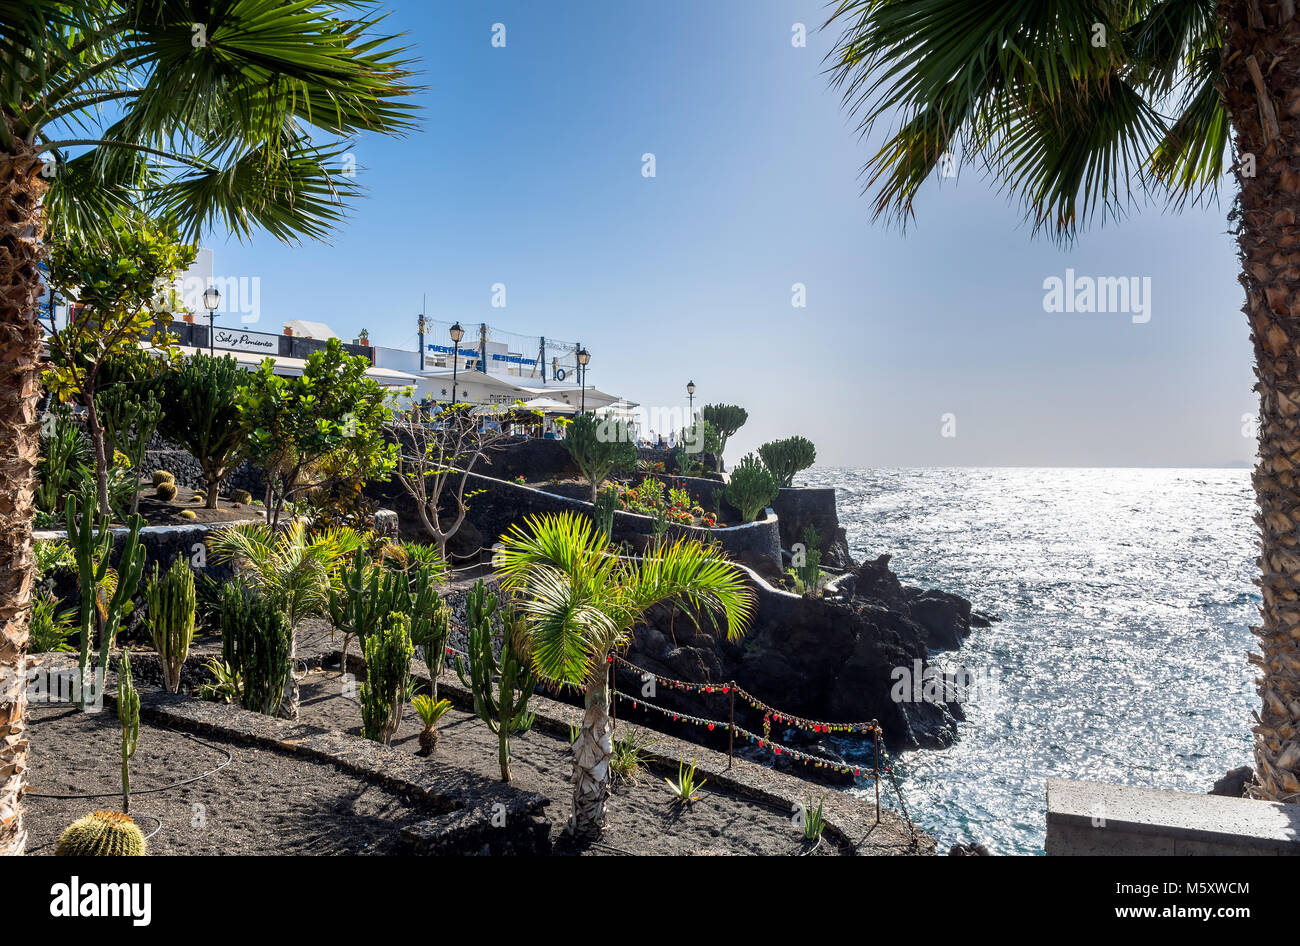 Puerto del Carmen, Espagne - Décembre 27, 2016 : la vue quotidienne de la promenade de palmiers et d'amour se bloque à Puerto del Carmen, Espagne. Puerto del Carmen est le ma Banque D'Images